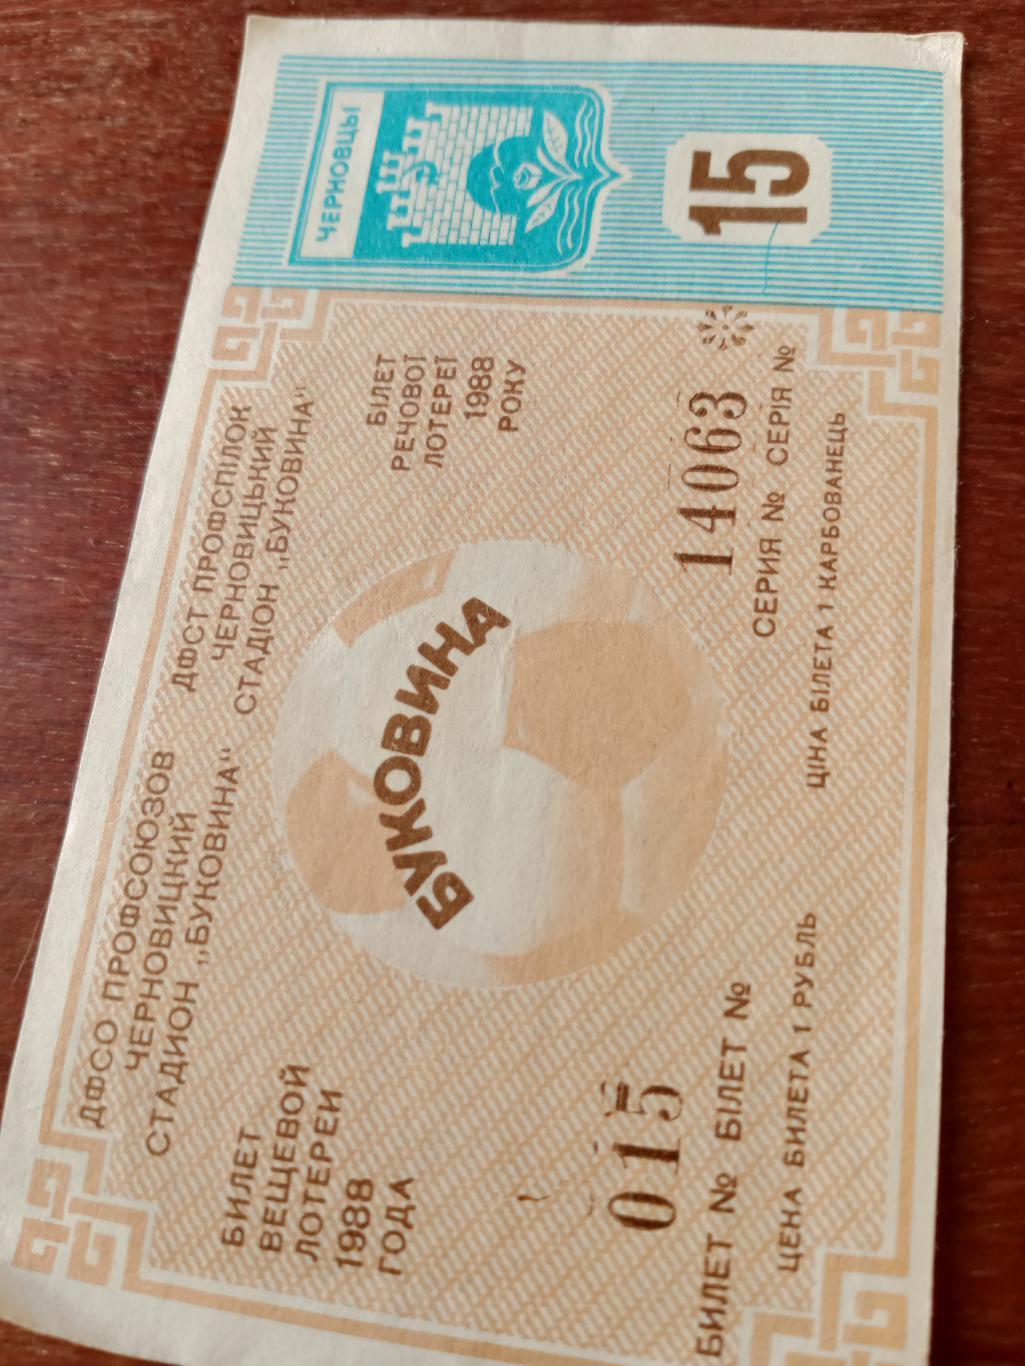 АКЦИЯ! Буковина Черновцы. Билет вещевой лотереи. 1988 год